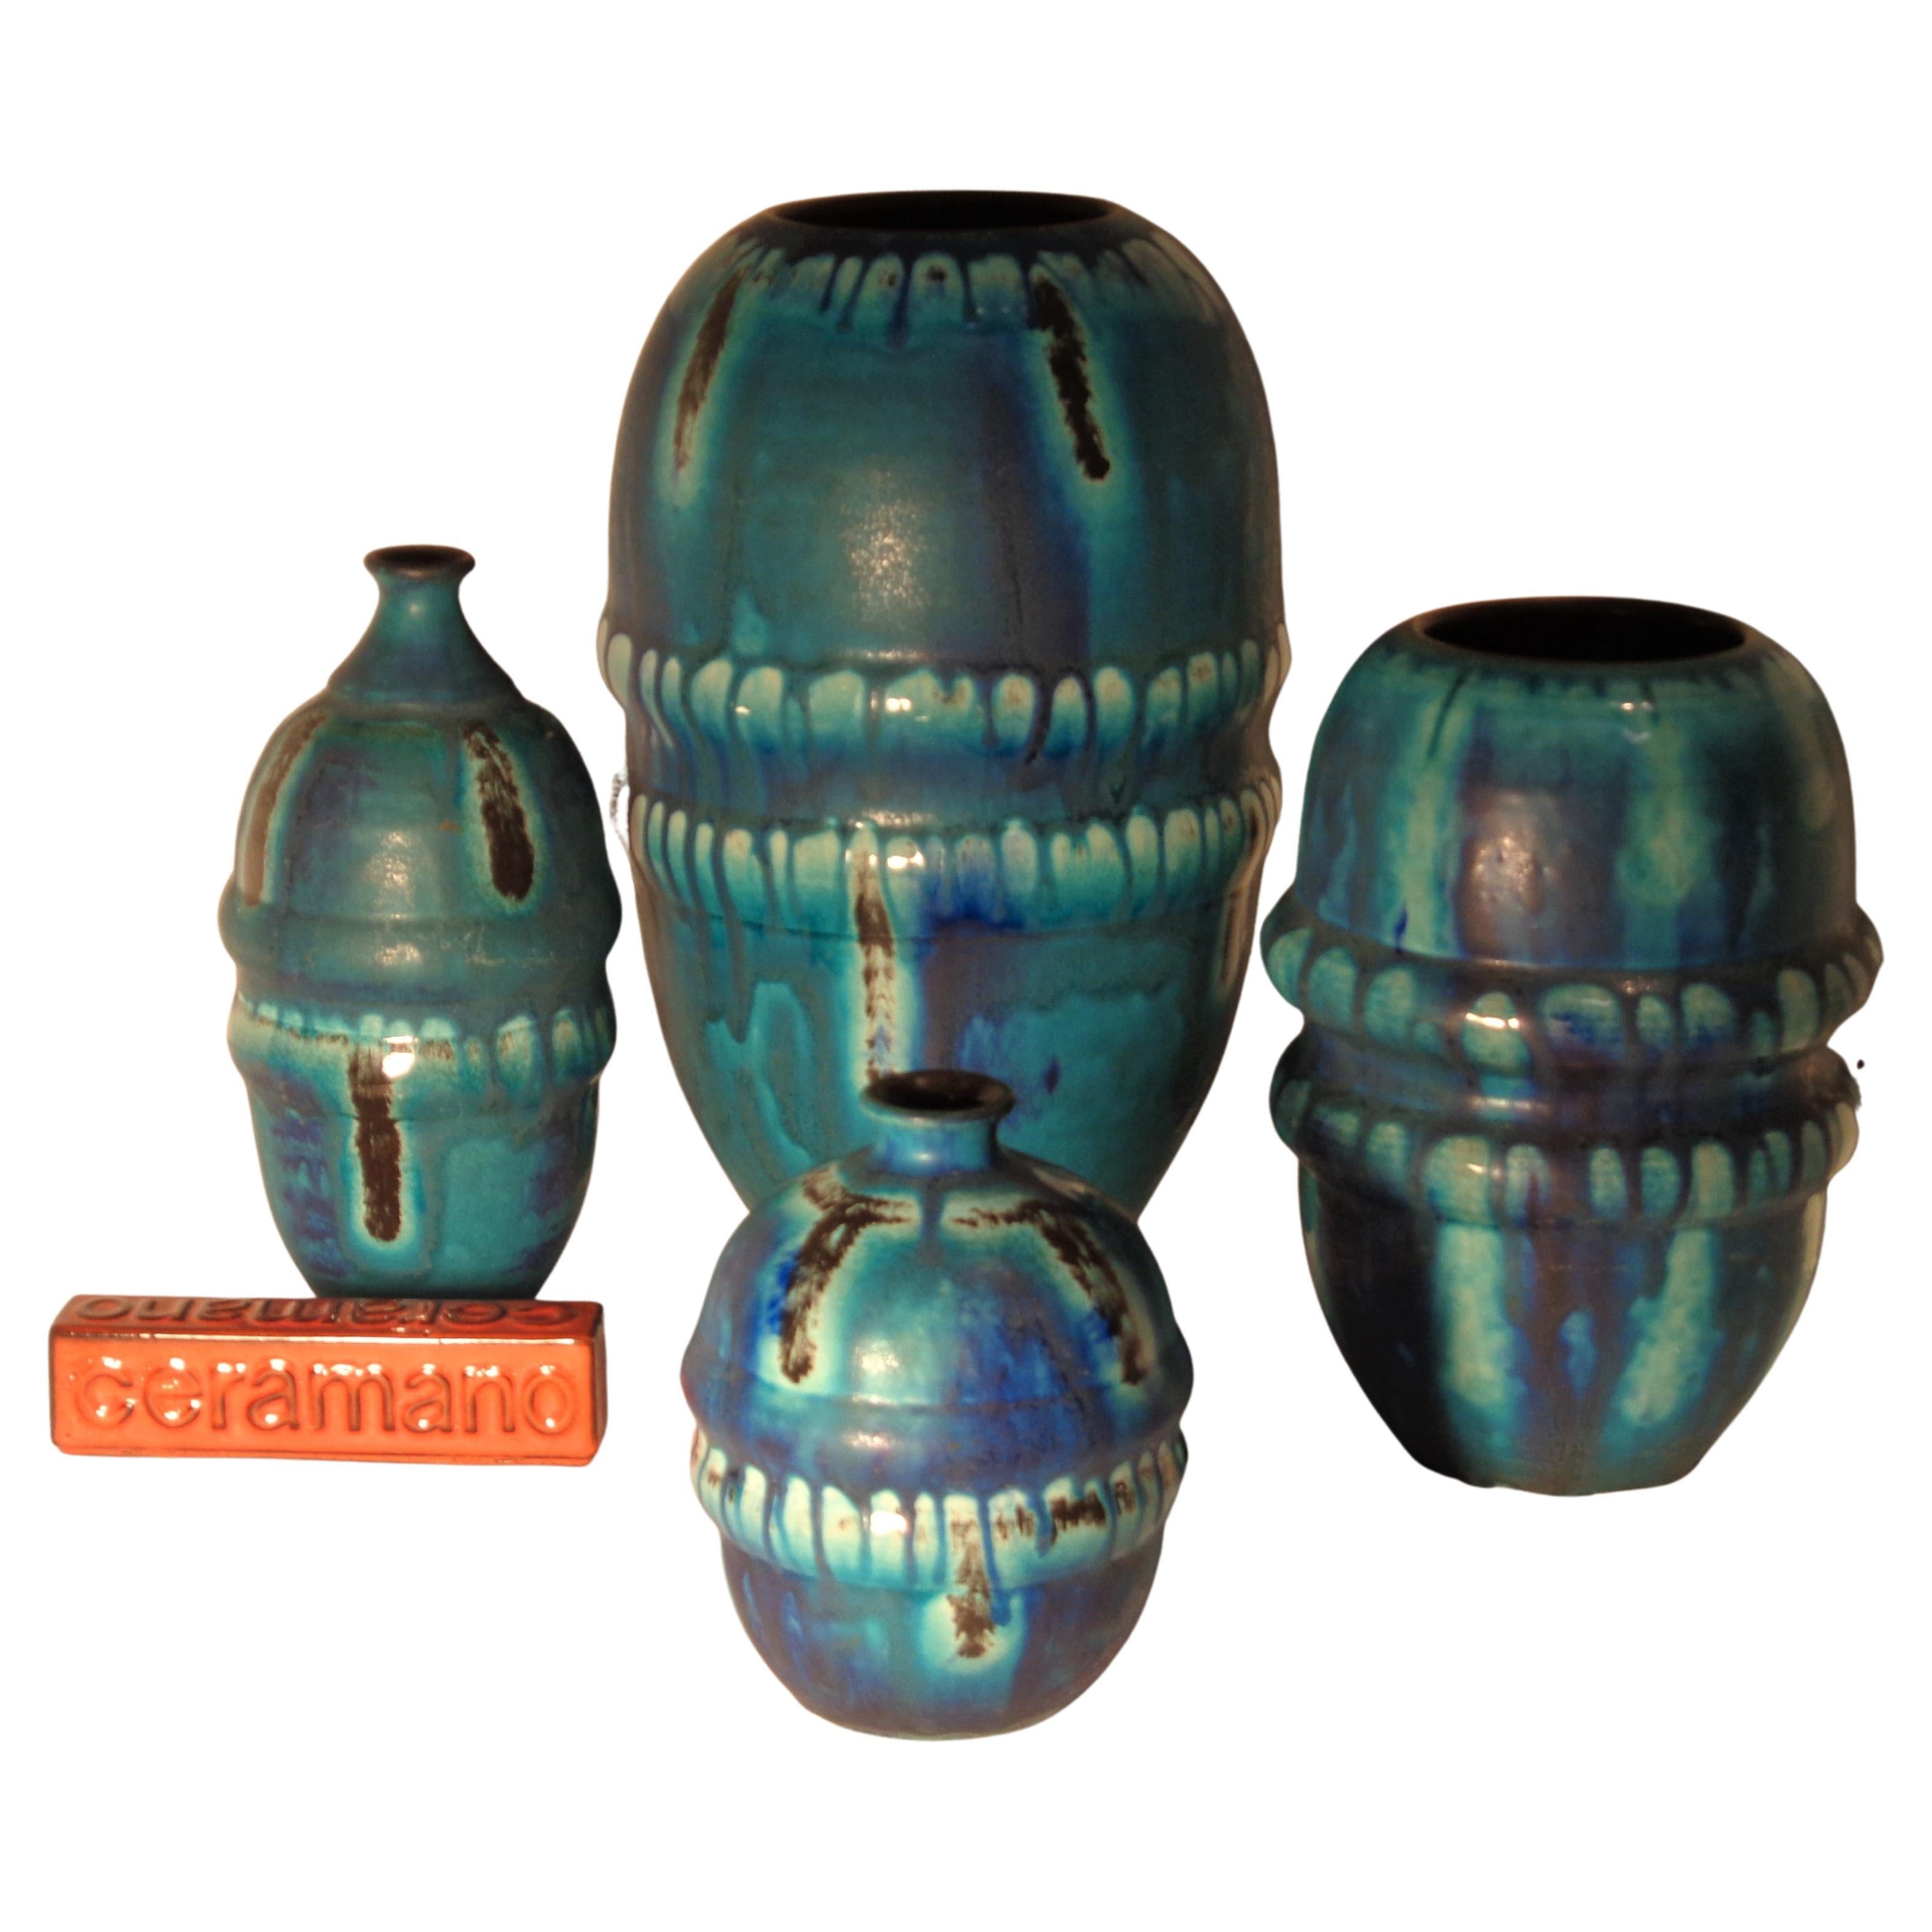 Ceramano Riviera Cerulean Blue Glaze Art Pottery Group, Germany 1960's 1